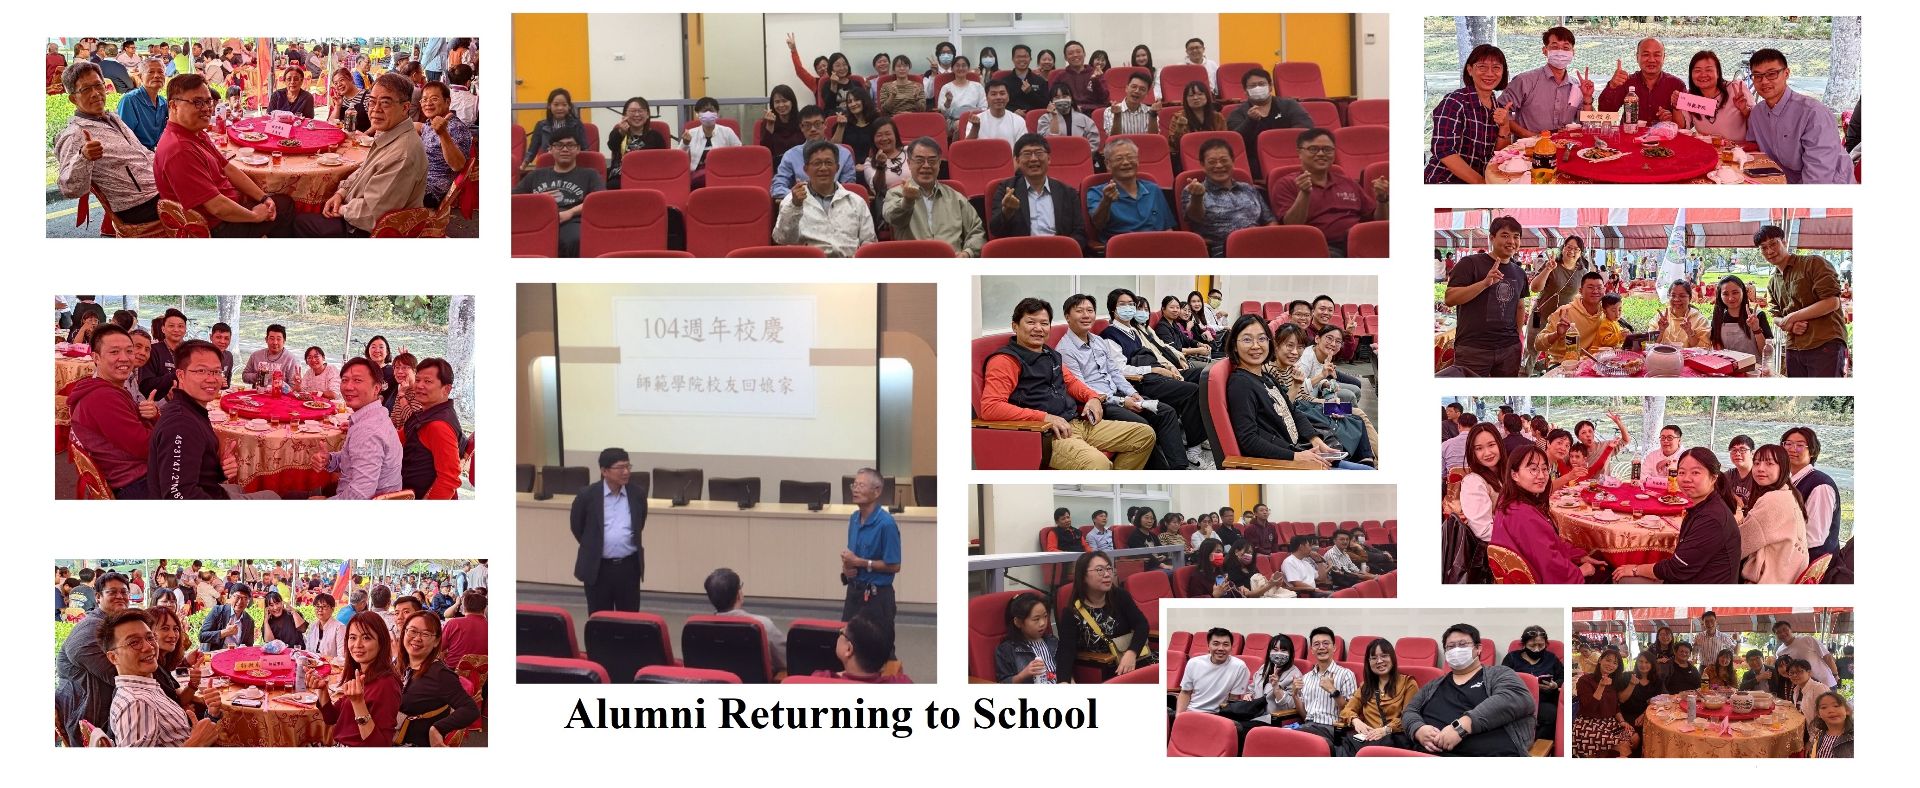 Alumni Returning to School